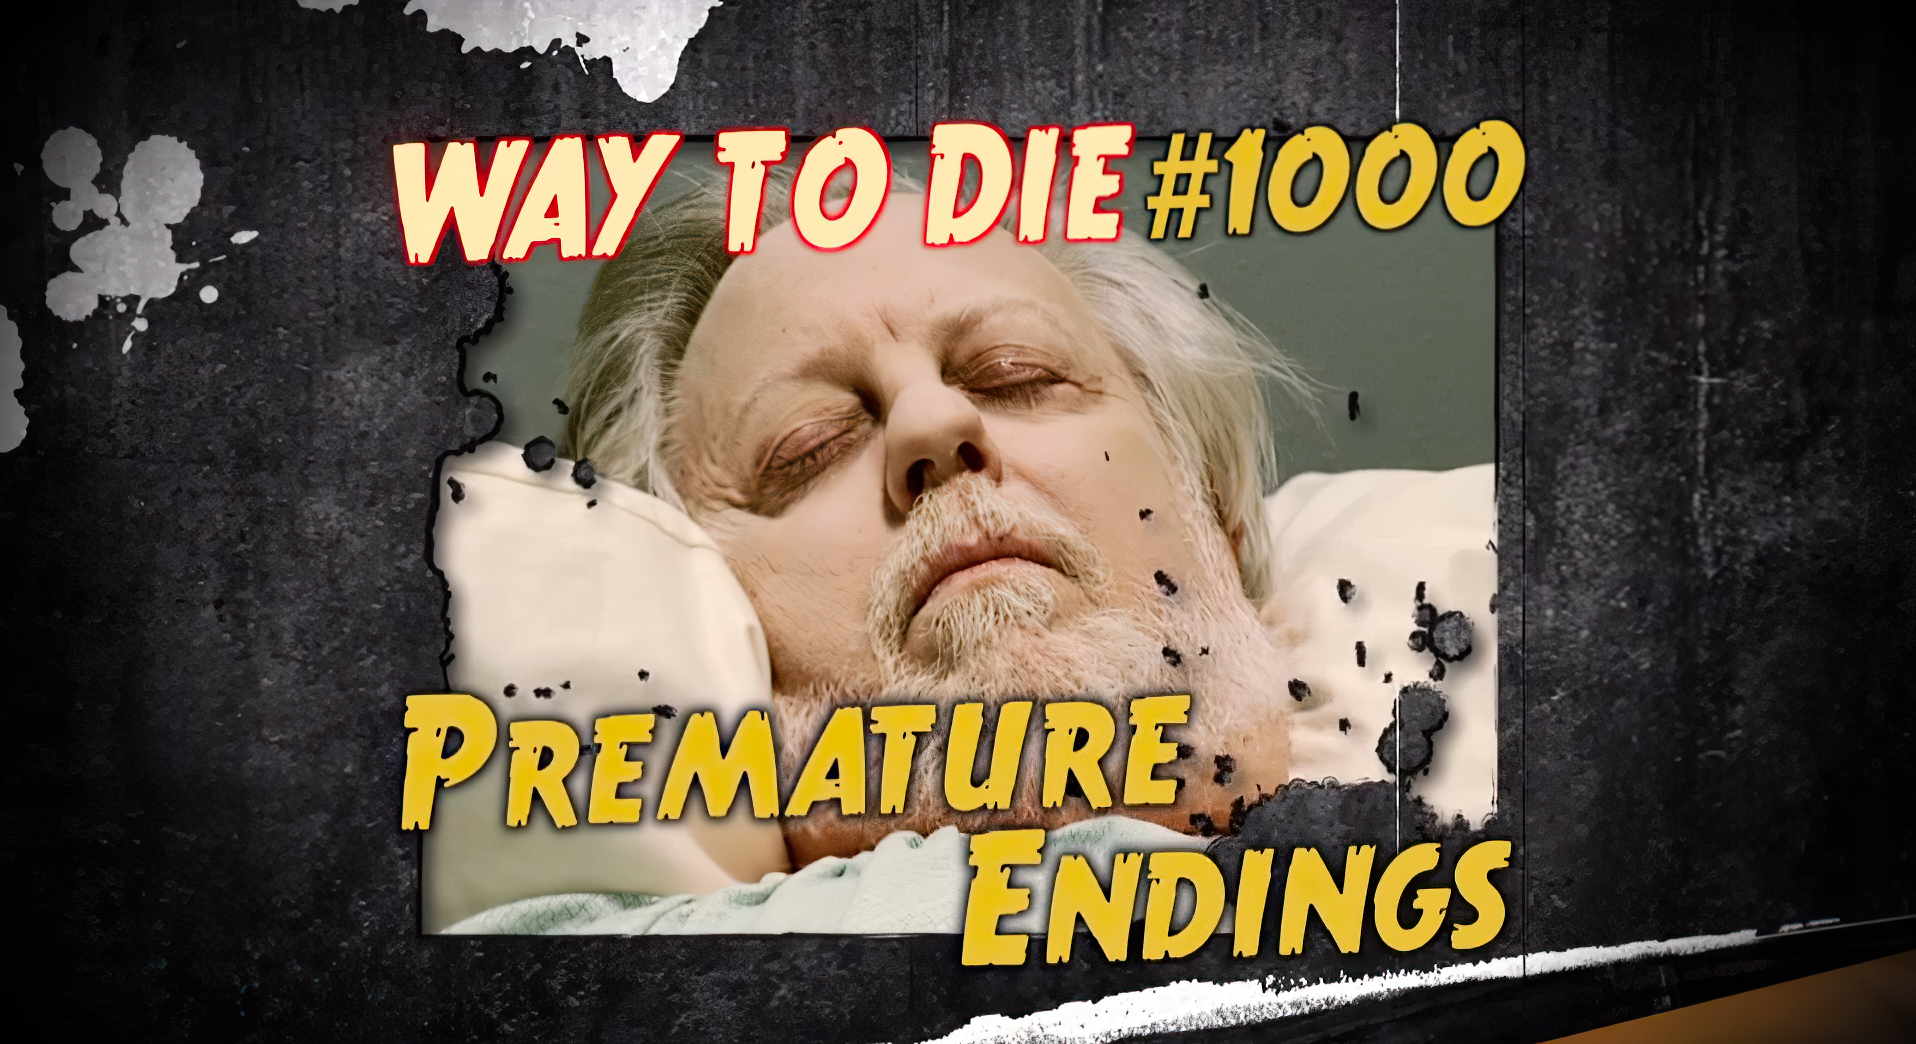 1000 ways to die video